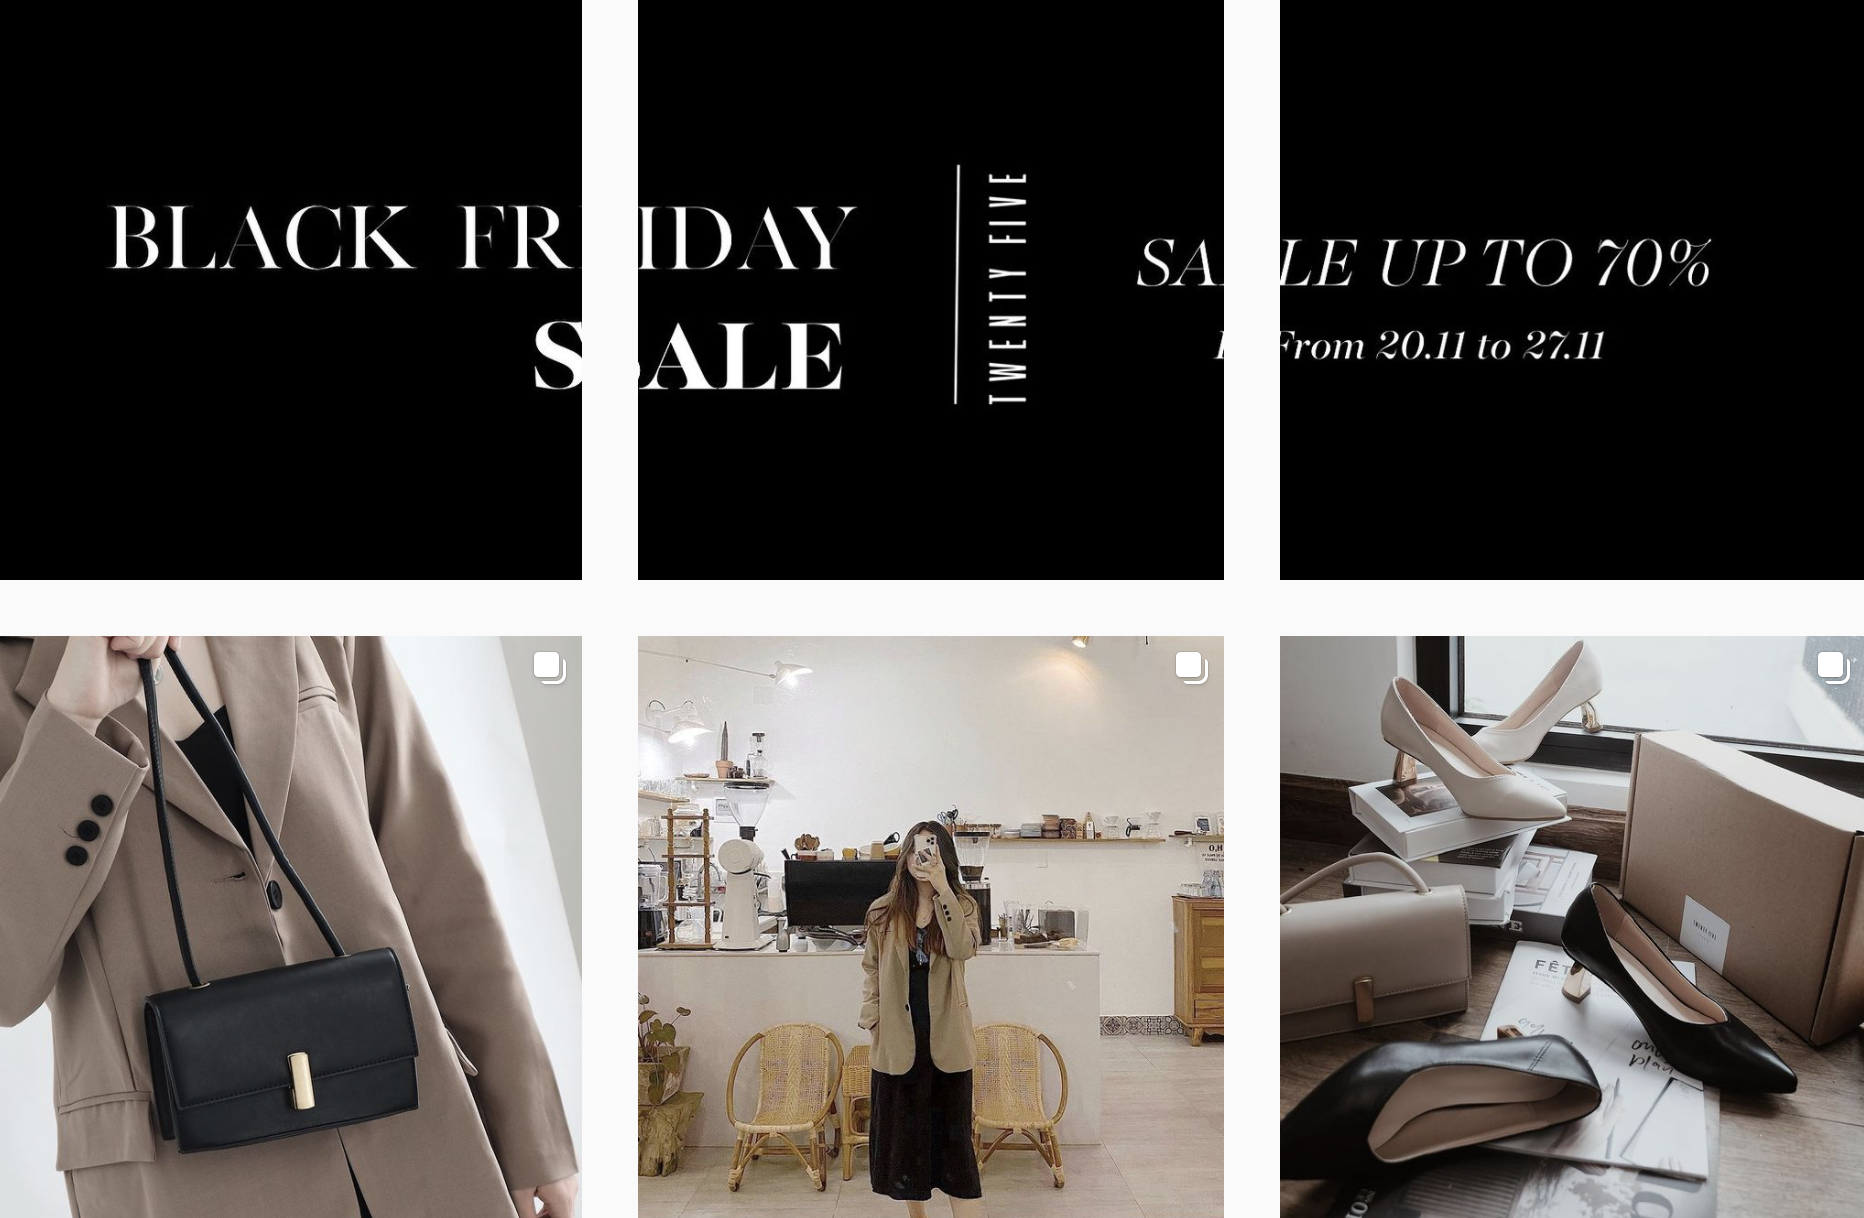 Các shop quần áo rần rần sale “sốc” Black Friday: Sắm đồ đẹp với giá giảm đến 70% ngay từ bây giờ - Ảnh 5.